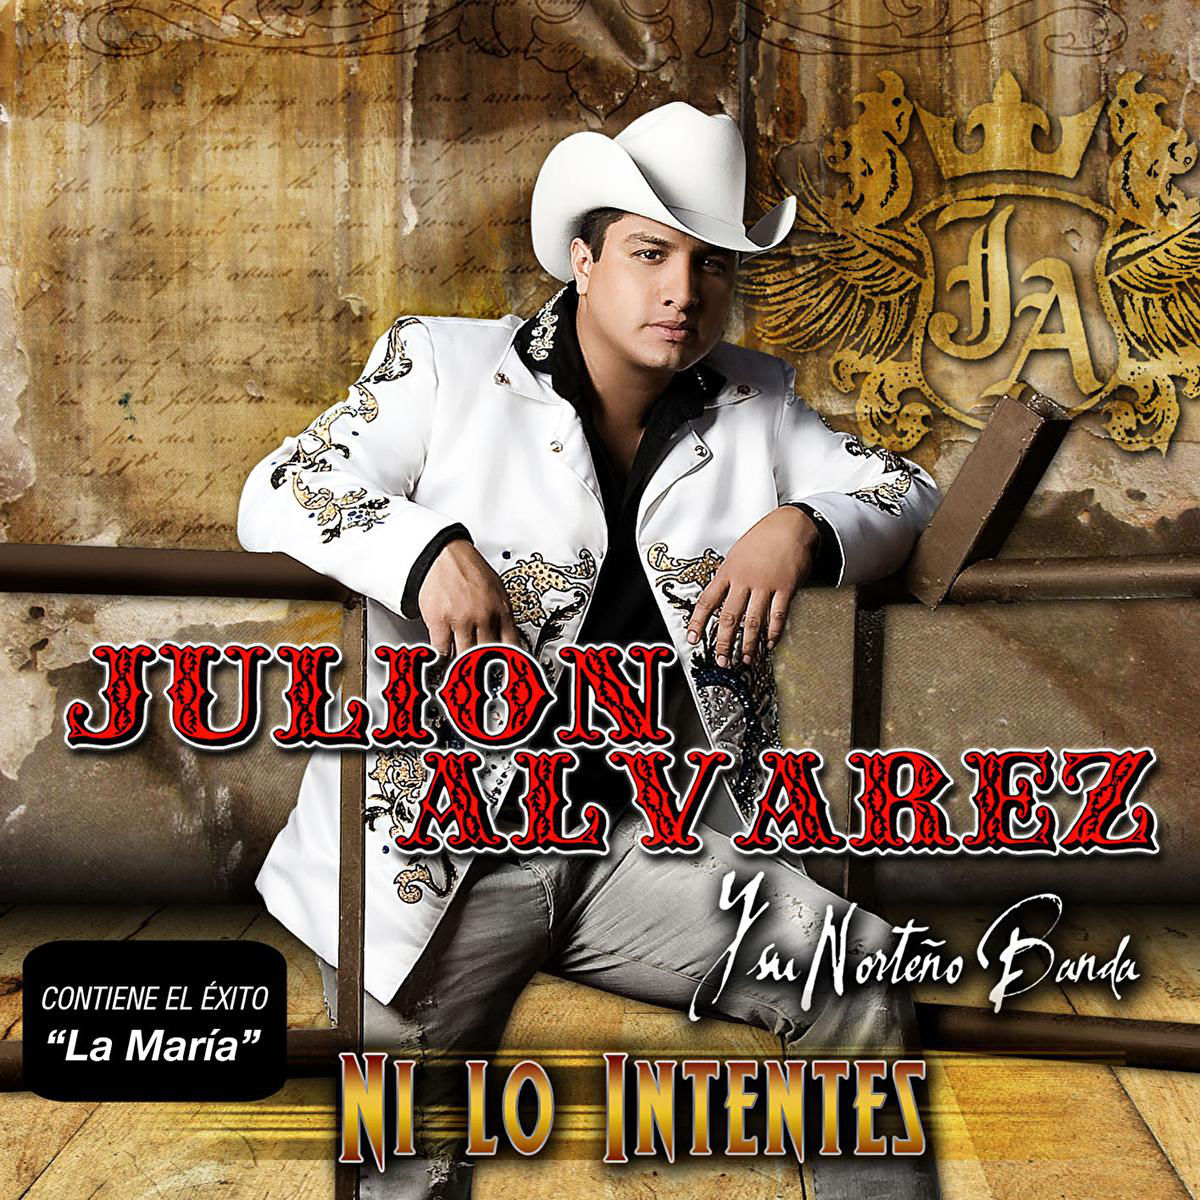 Discografias Completas Regional Mexicano Discografia Julion Alvarez